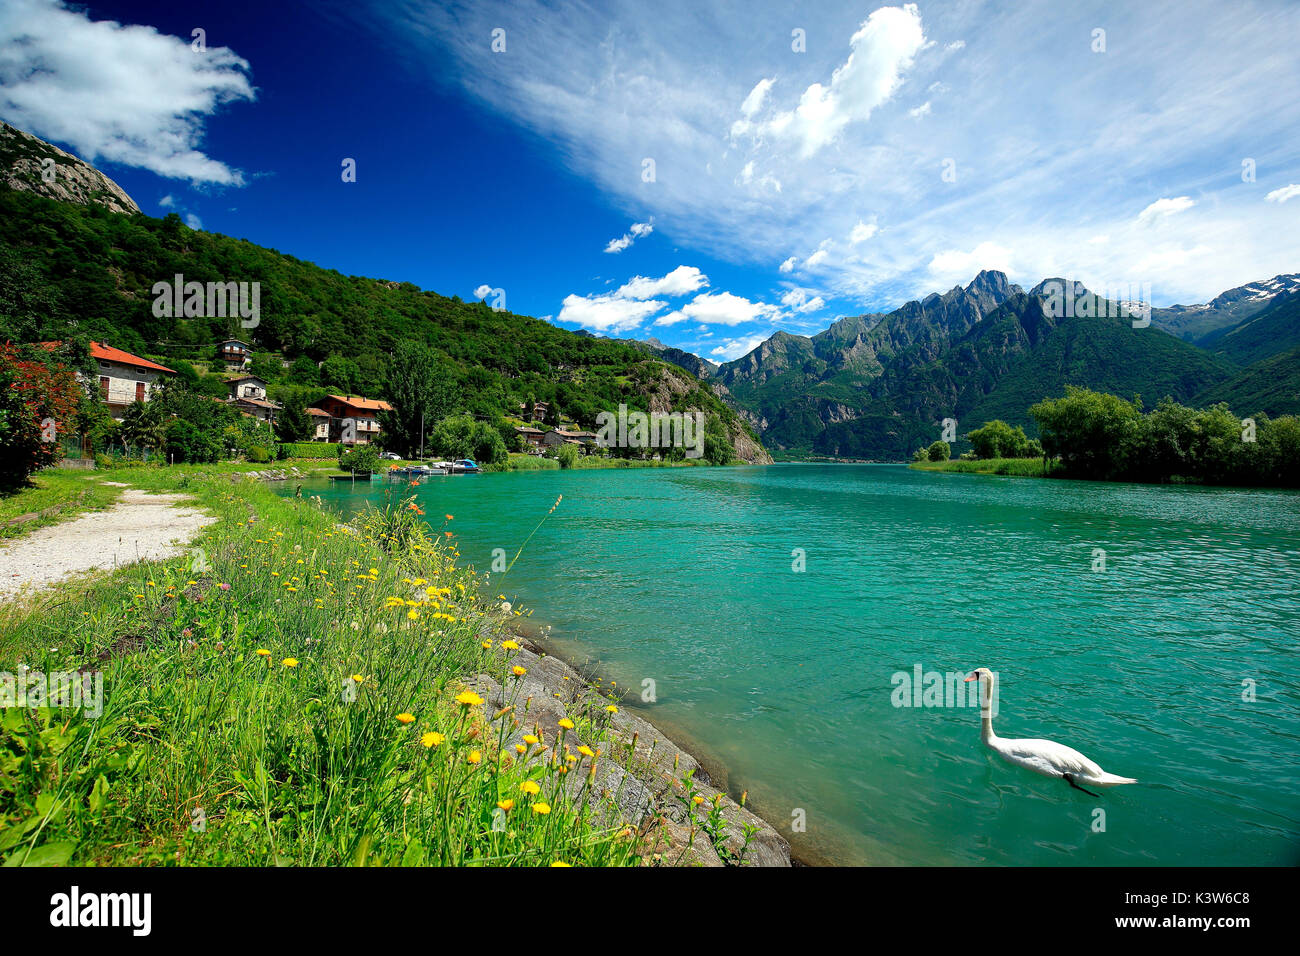 A swan in Lake Dascio, Sorico, Como province, Lombardy, Italy Stock Photo